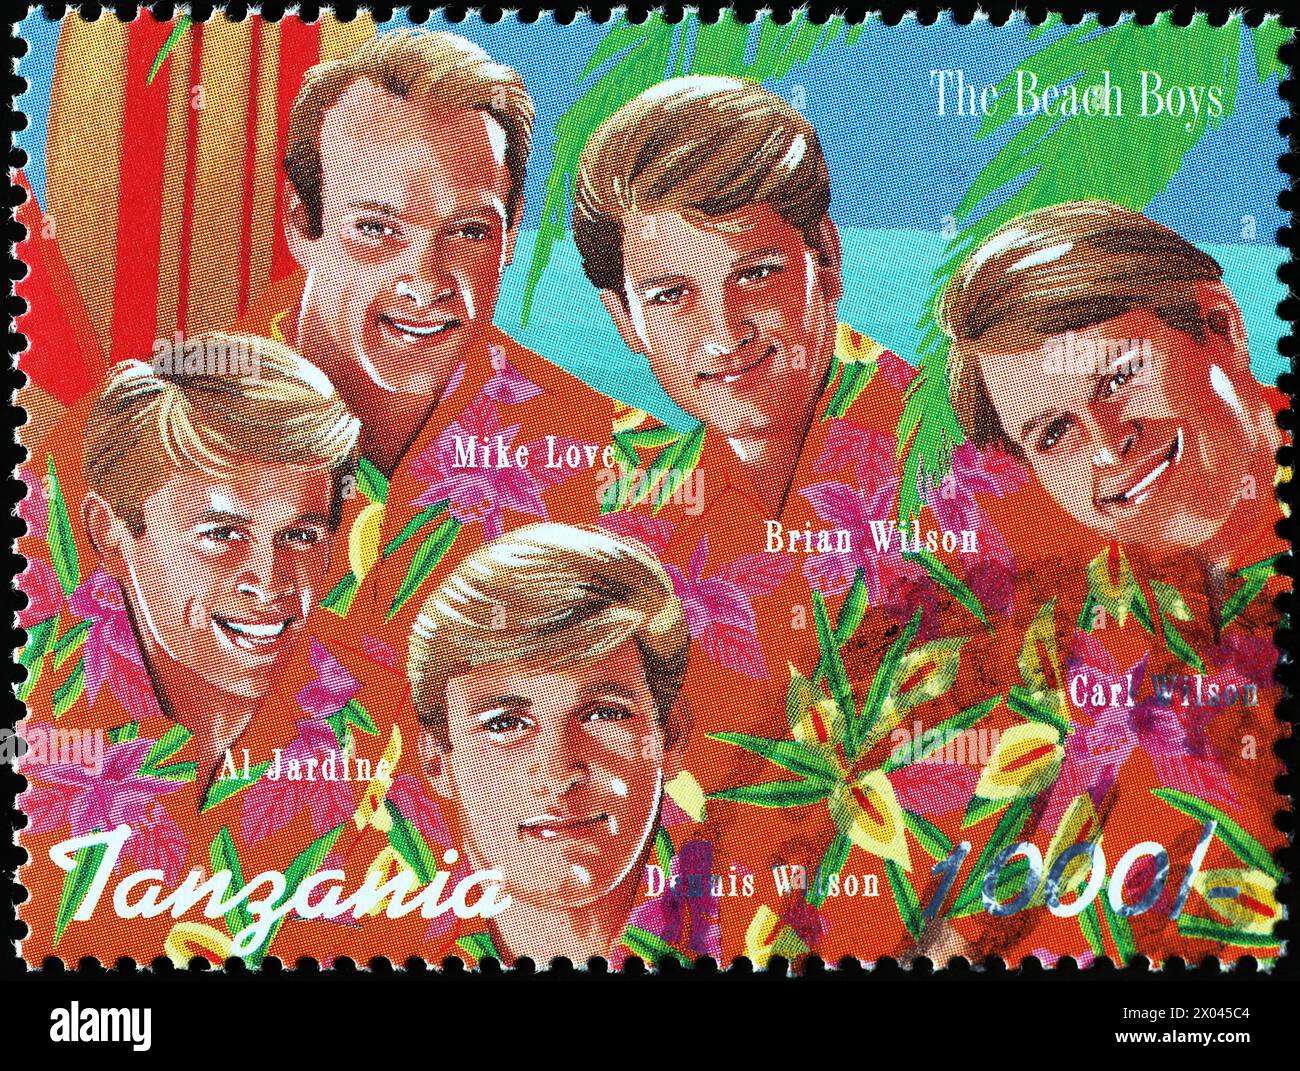 Les Beach Boys sur timbre-poste de Tanzanie Banque D'Images